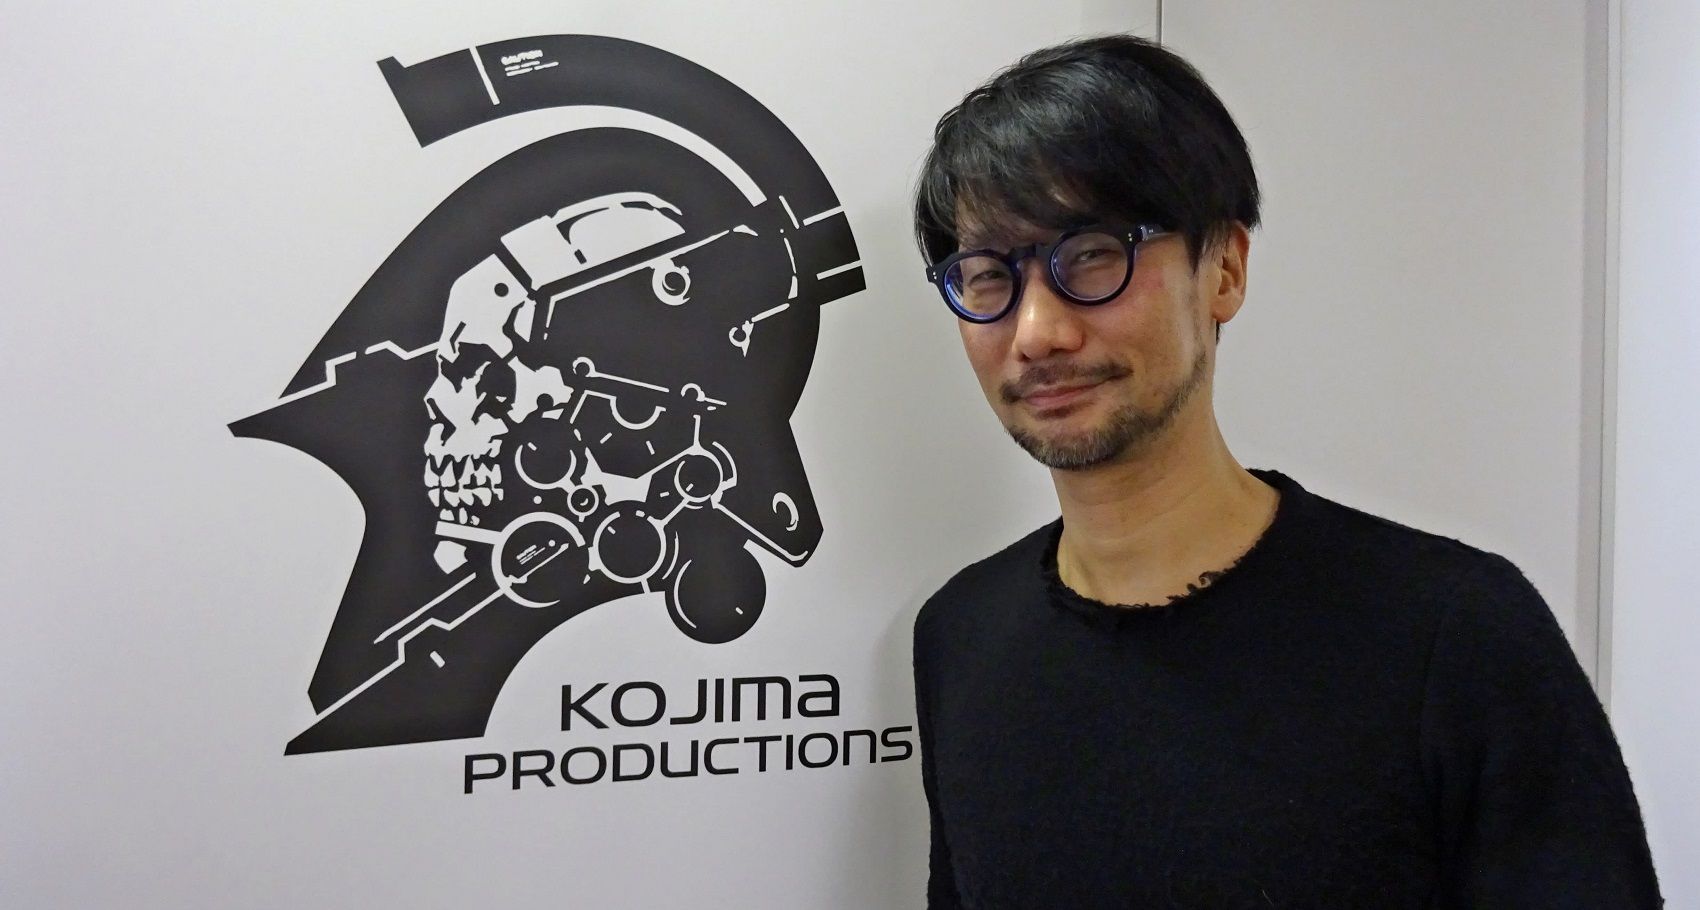 LIST-EM  Top Ten Best Hideo Kojima Games: Ranked - List-em